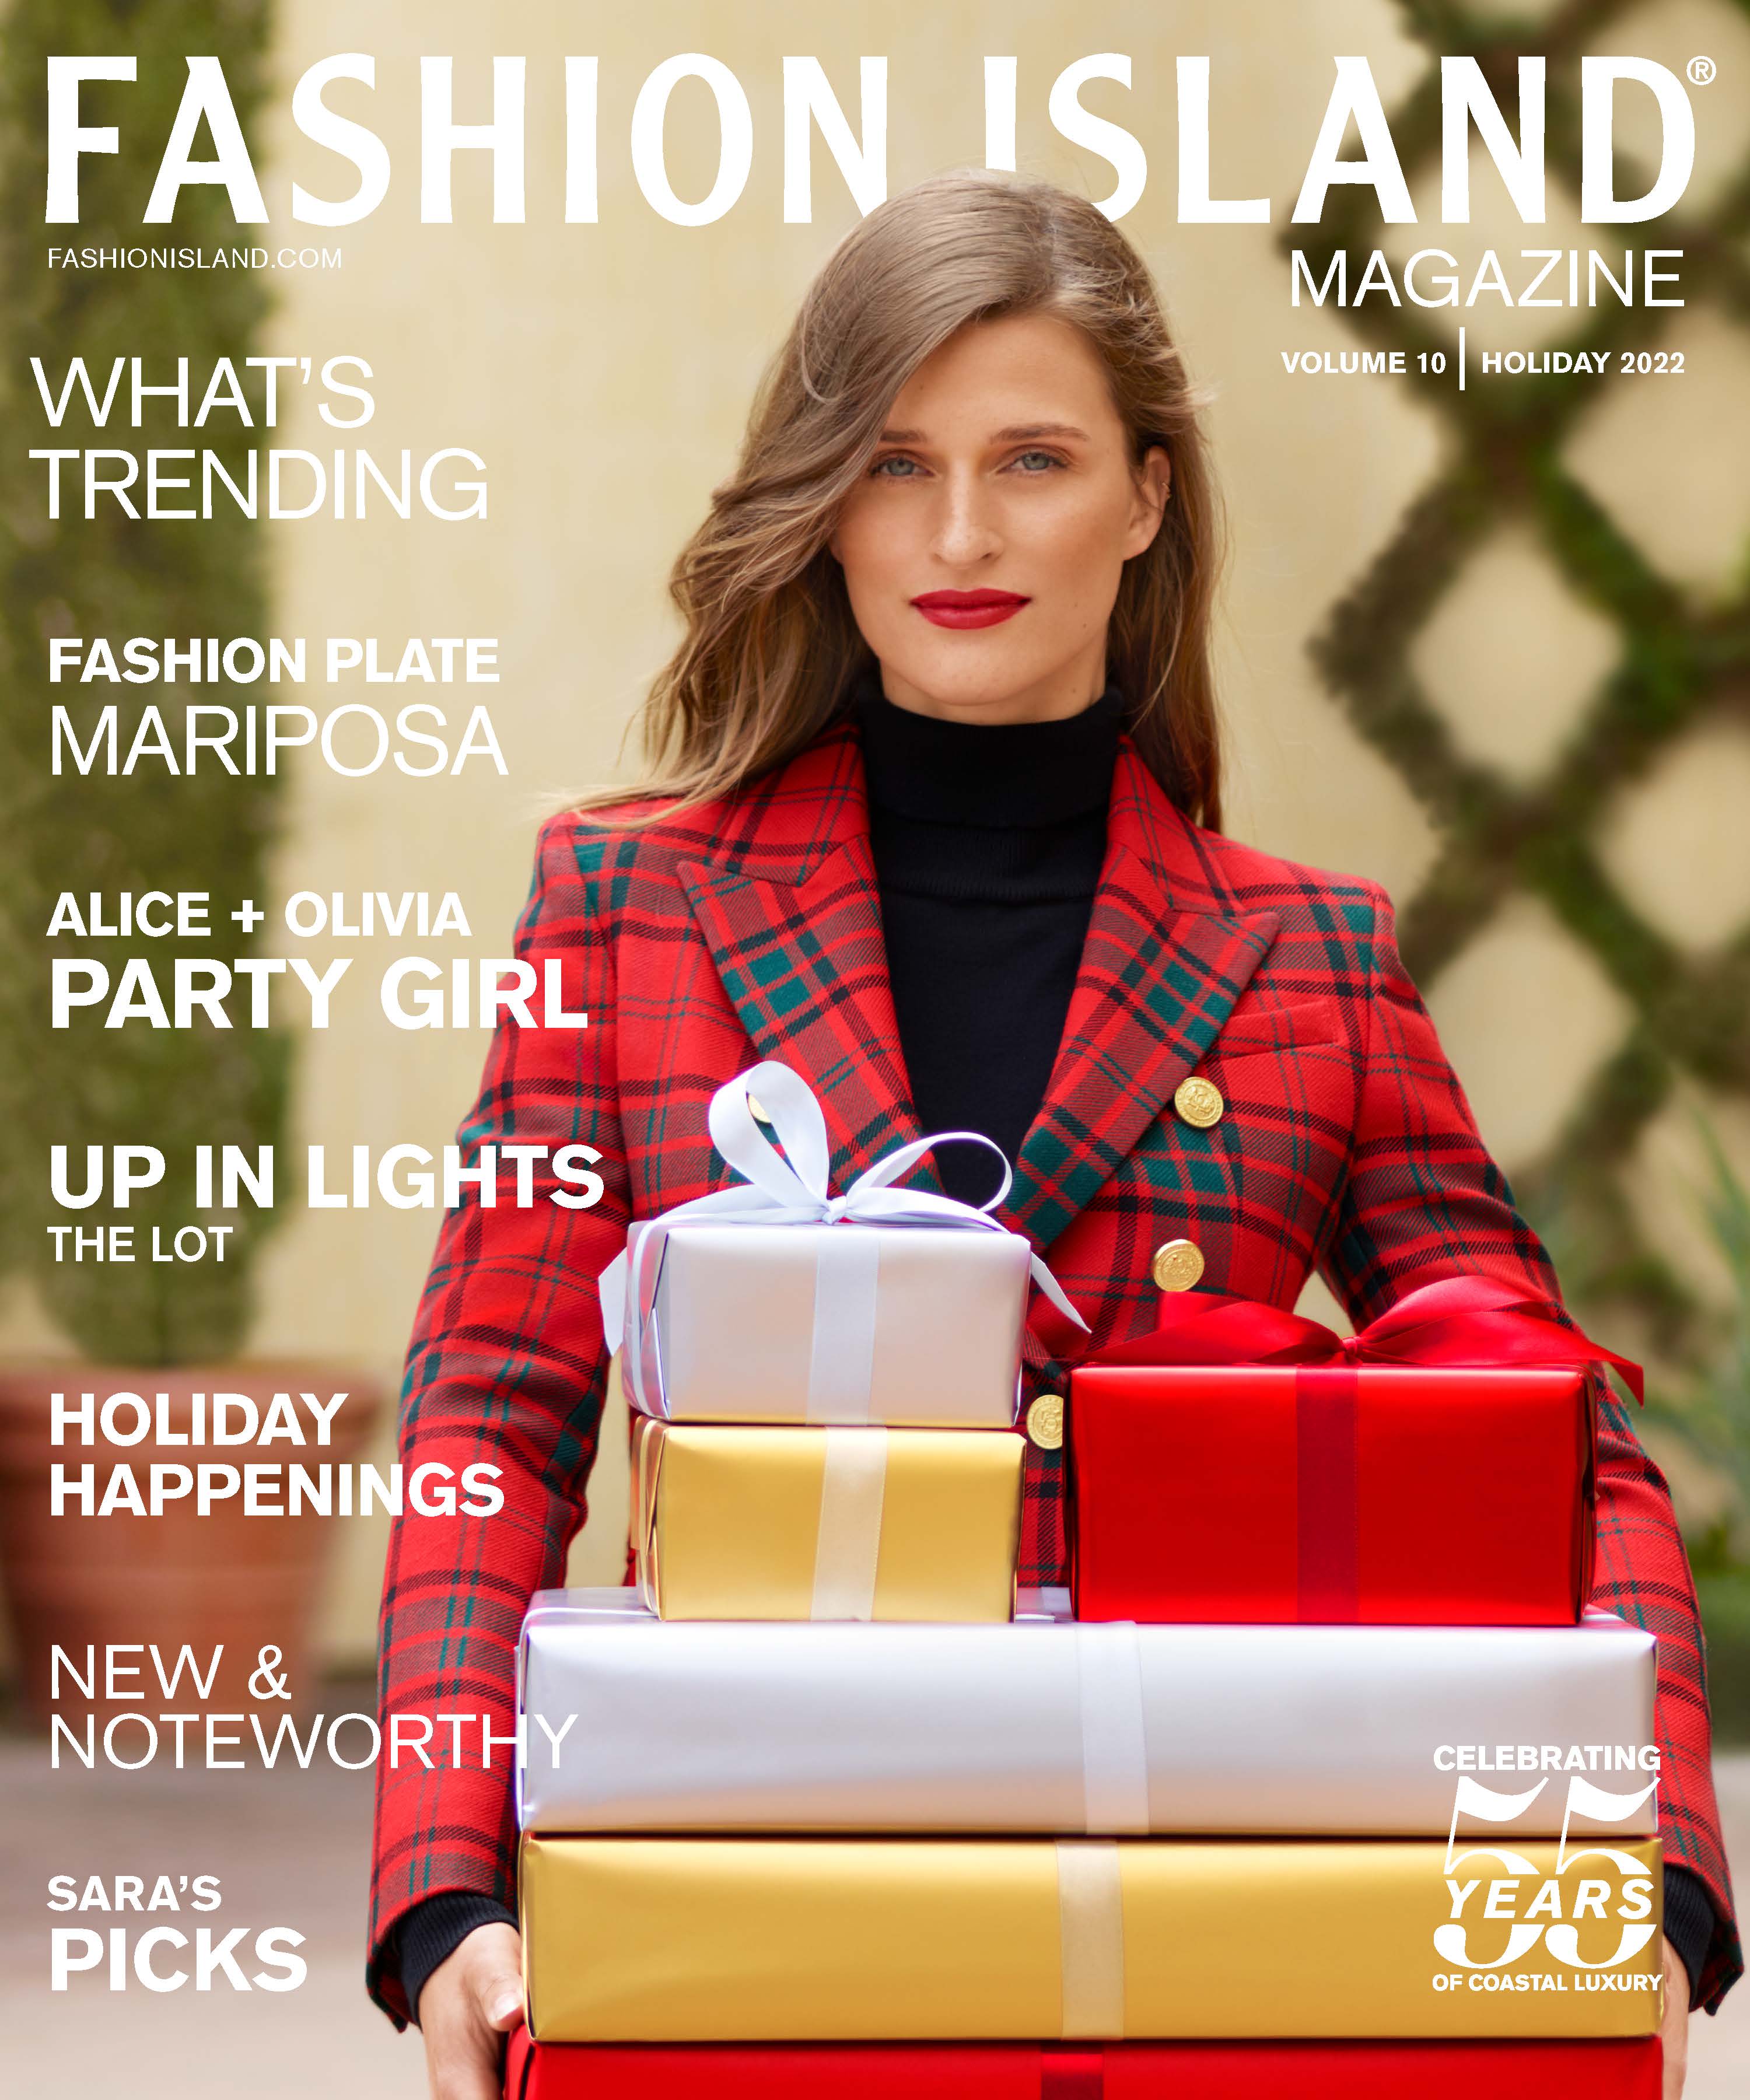 Fashion Island Magazine Holiday 2022